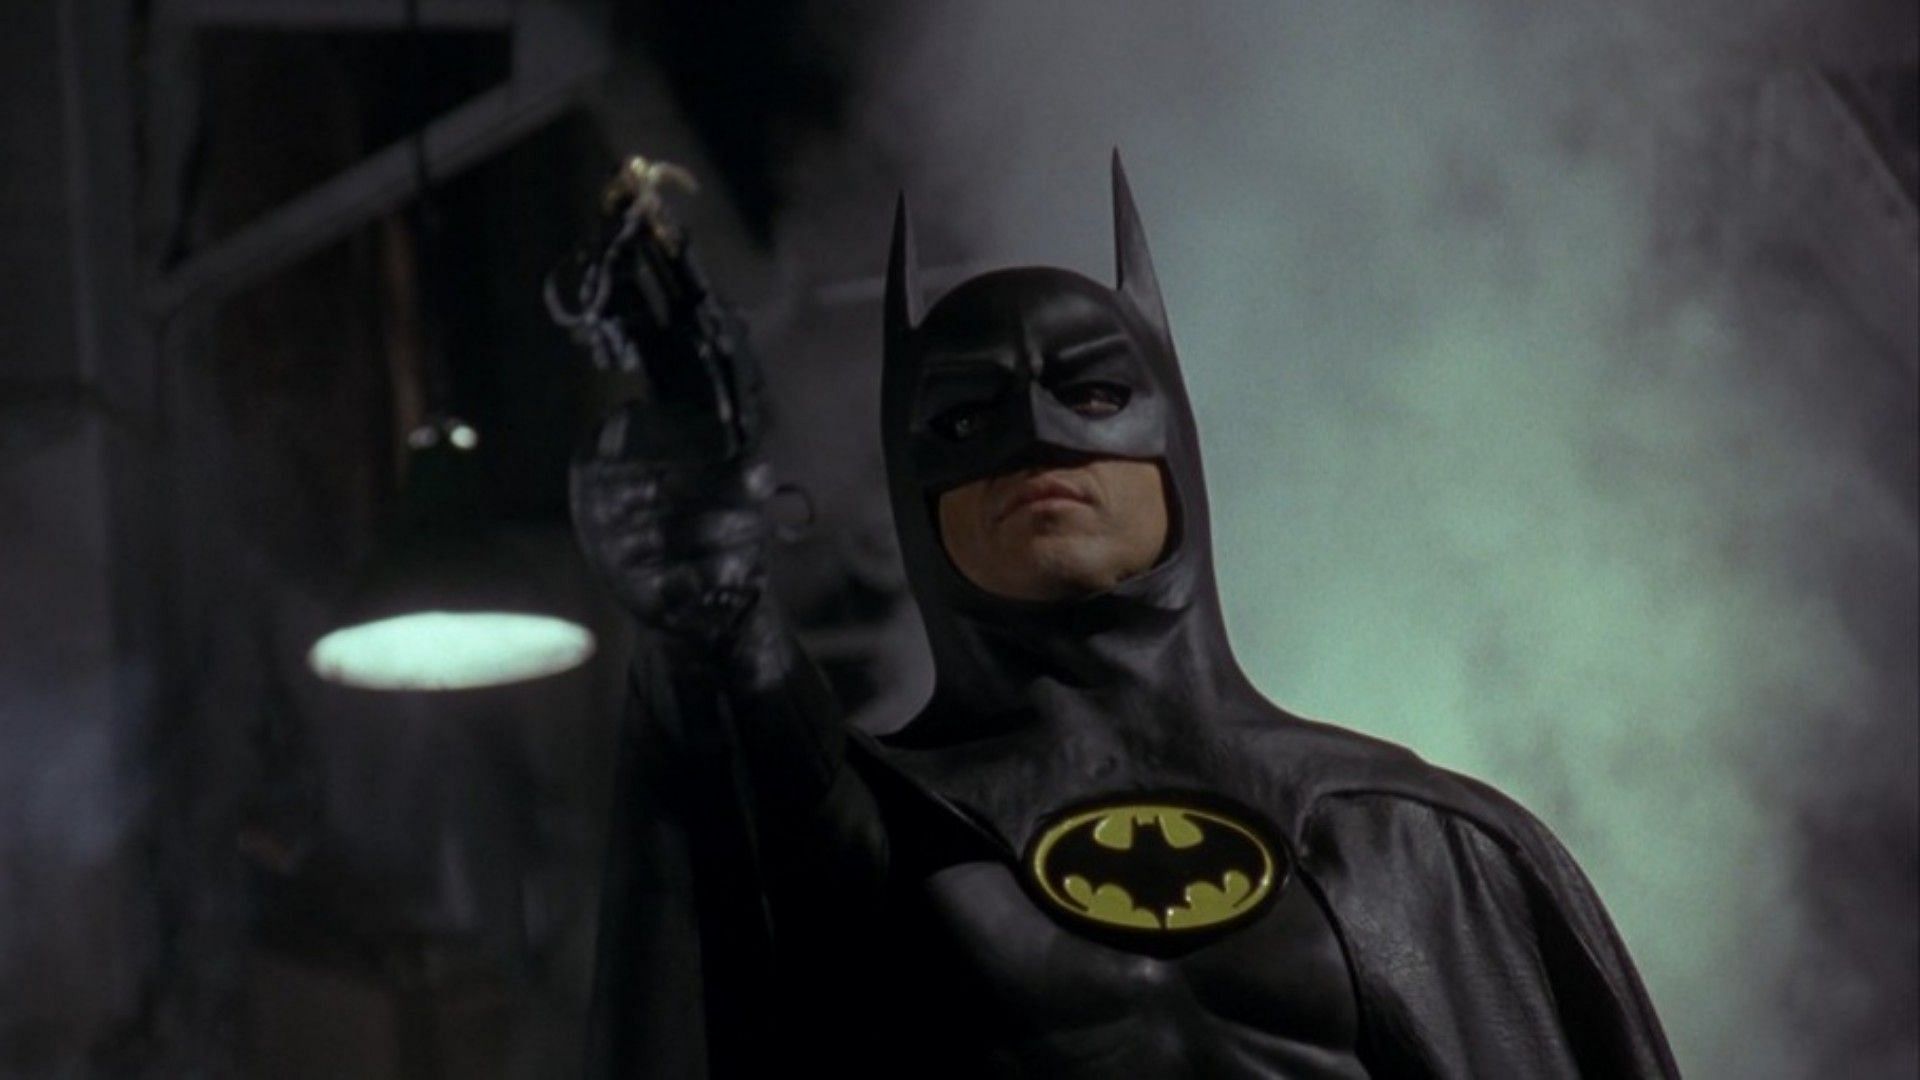 Michael Keaton as Batman (Image via Warner Bros Studios)